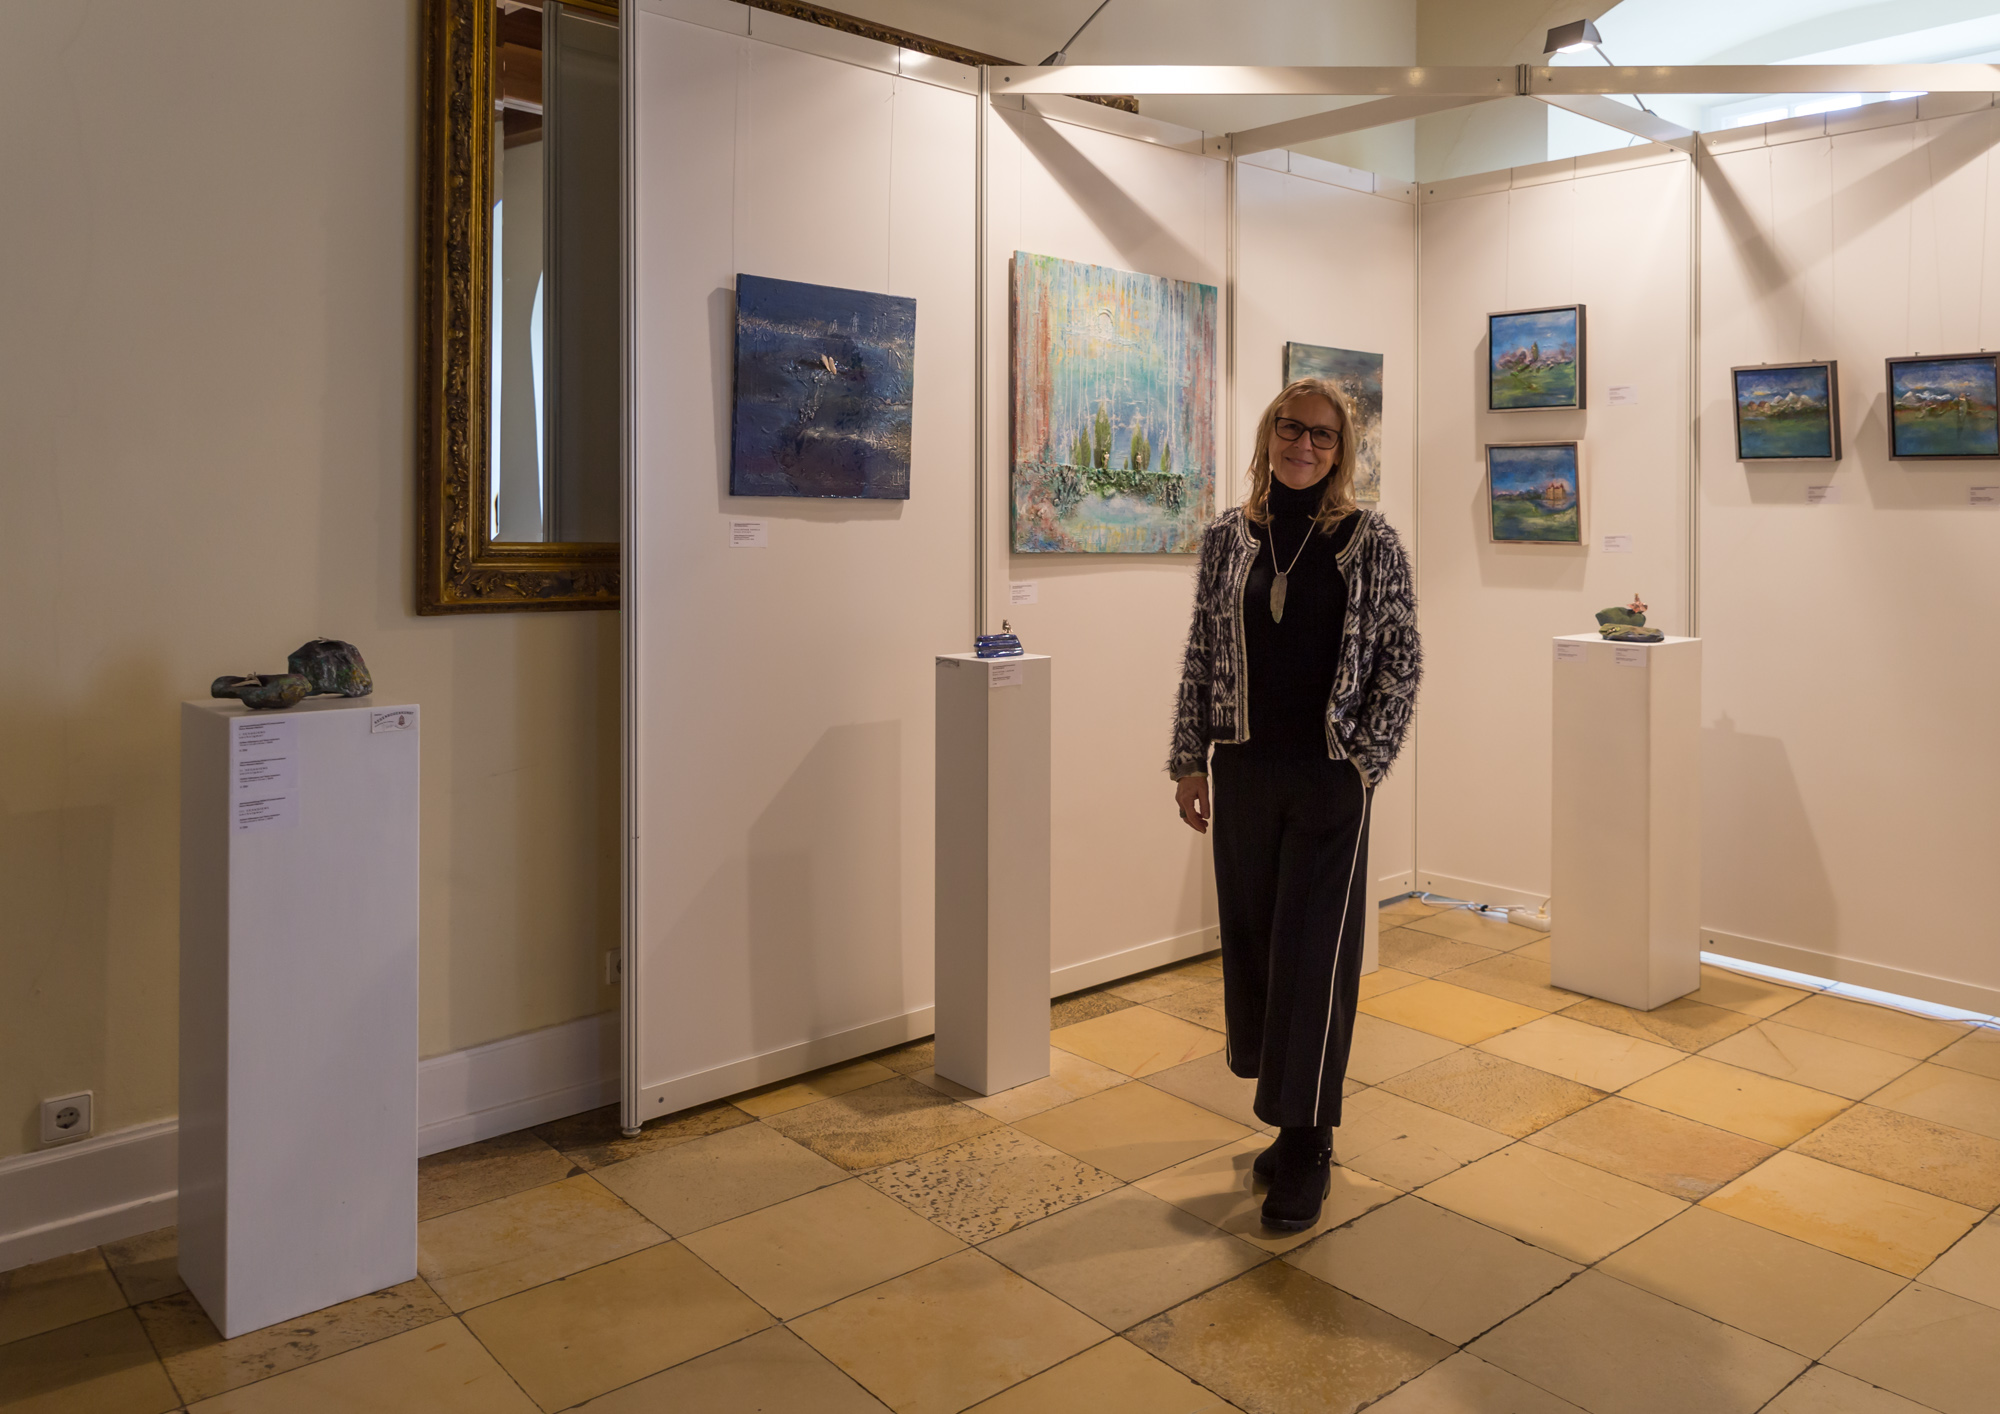 Bildcollage zum Internationalen Kunstsalon auf der Burg Stettenfels 2019 zeigt die Künstlerin Petra Wenski-Hänisch vor ihrem Ausstellungsbereich mit lieben Besuchern.